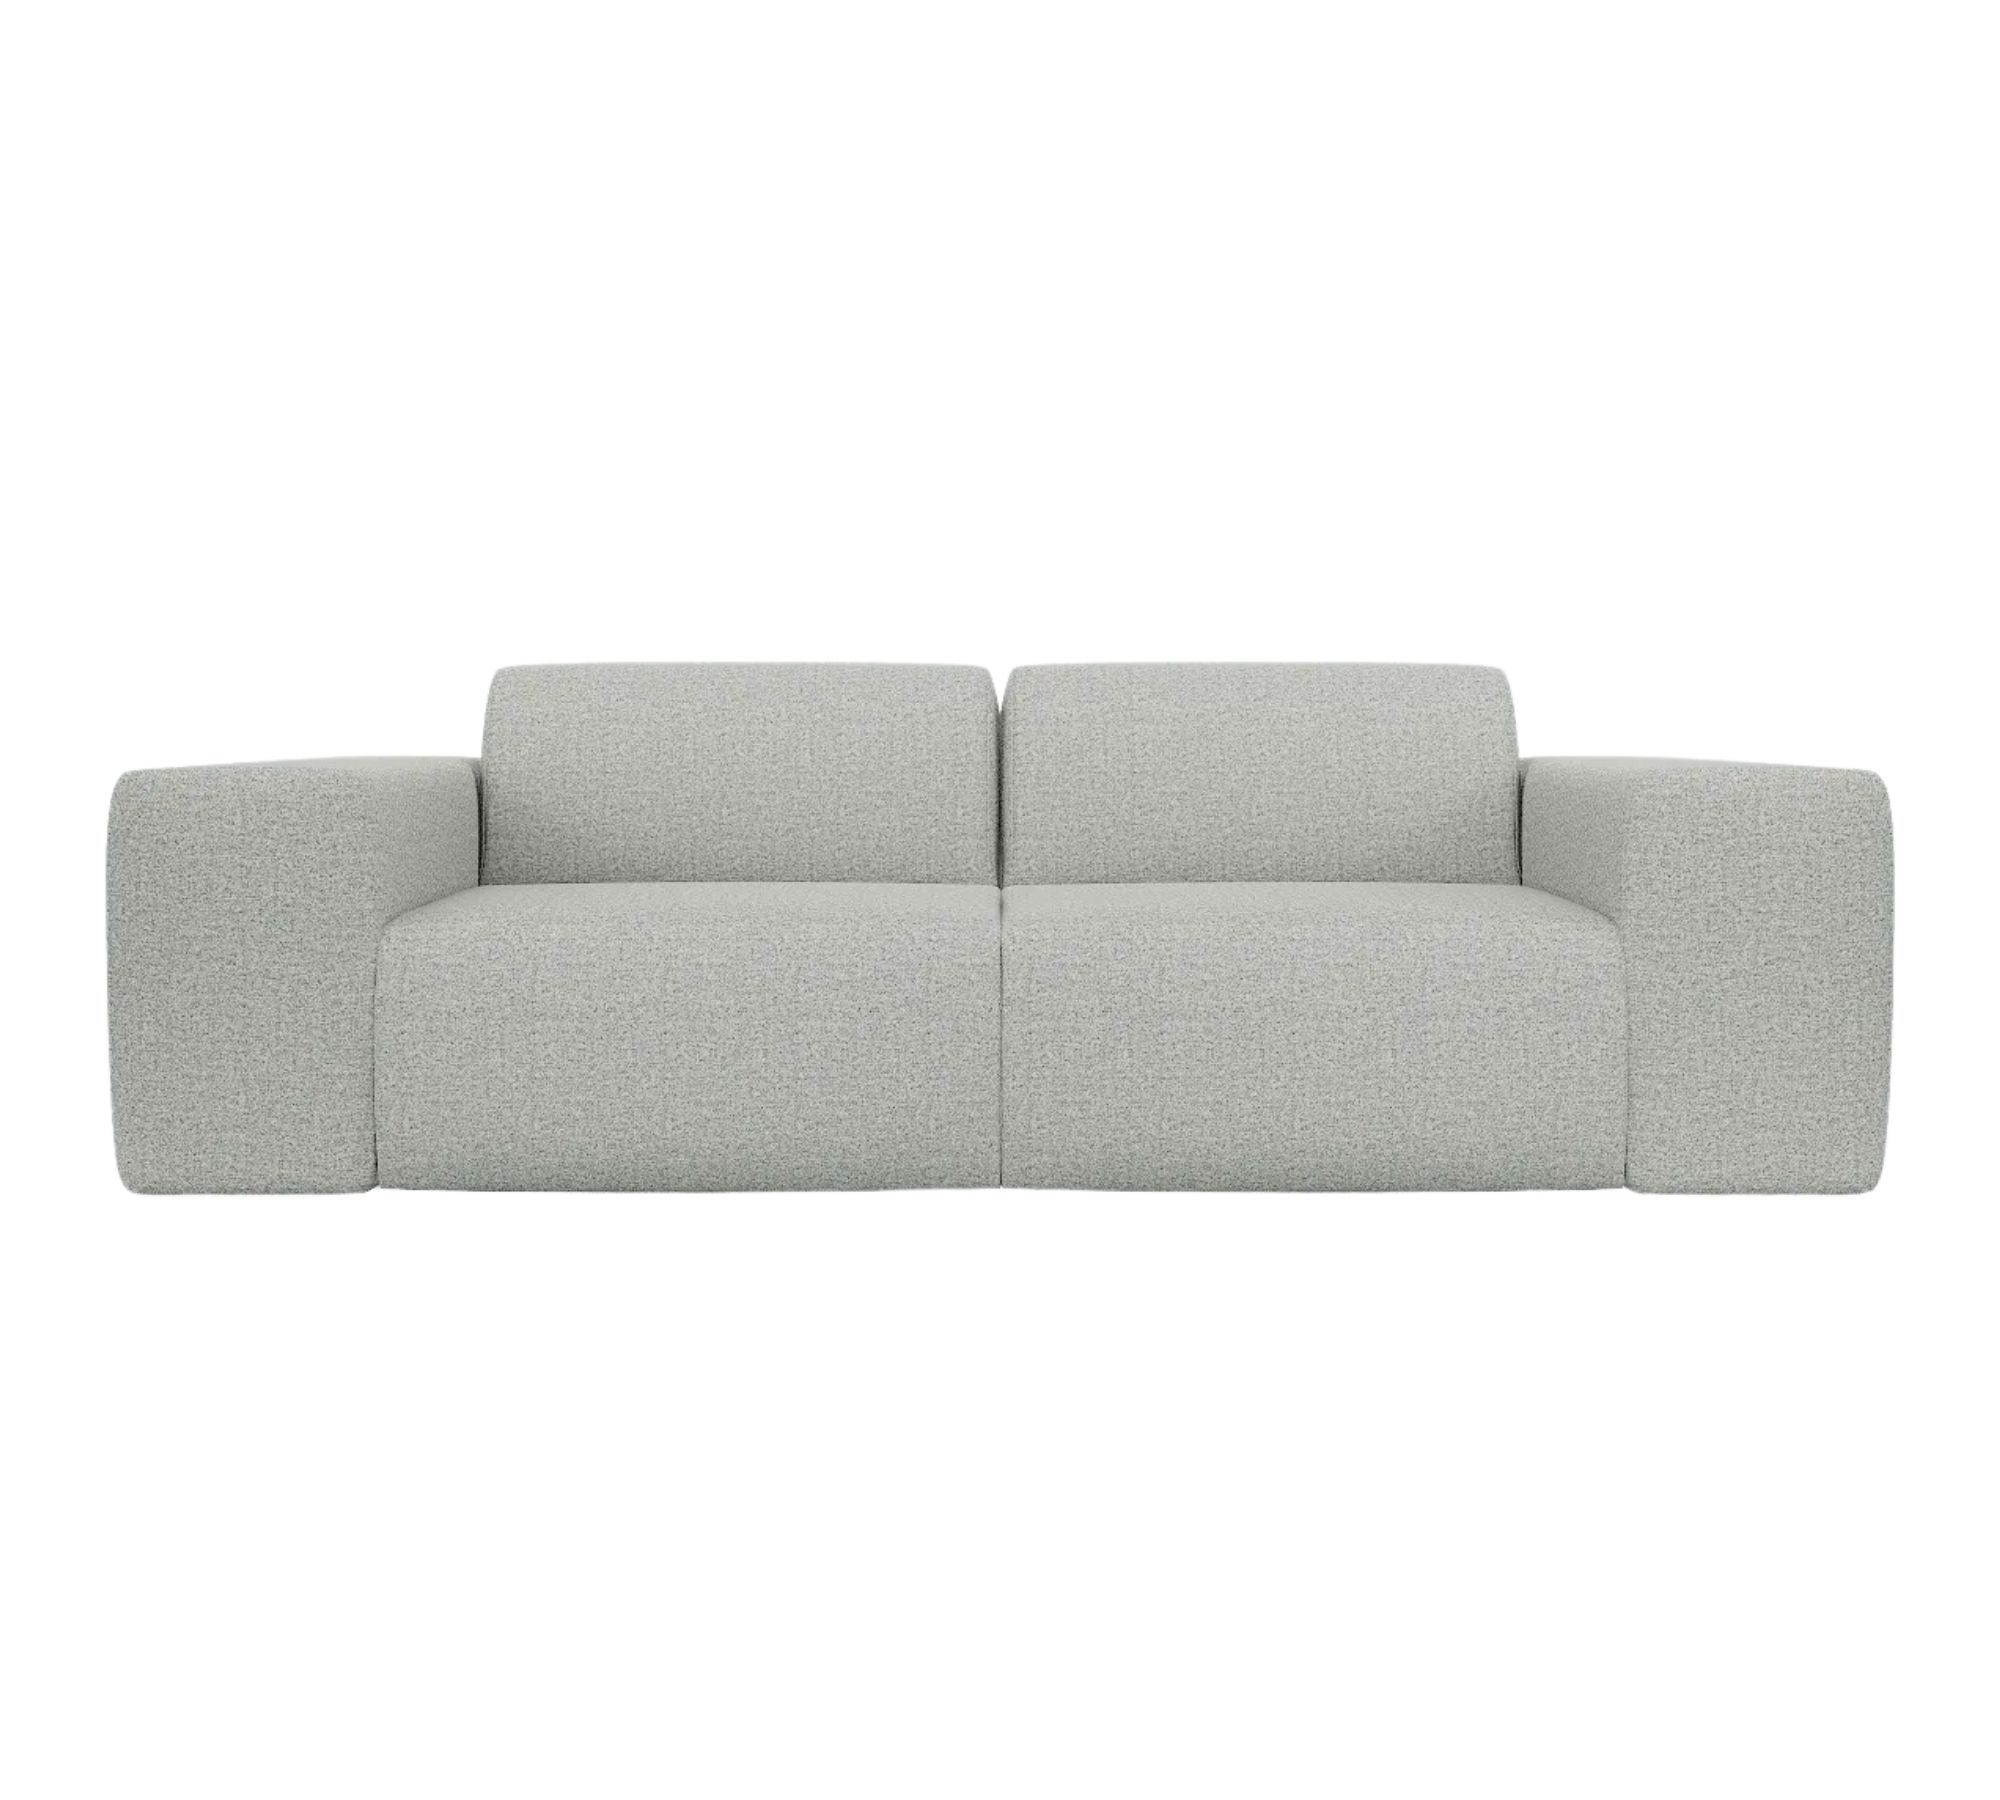 Pyllow Sofa 2-Sitzer Kiesgrau meliert 100% natürliche Wolle